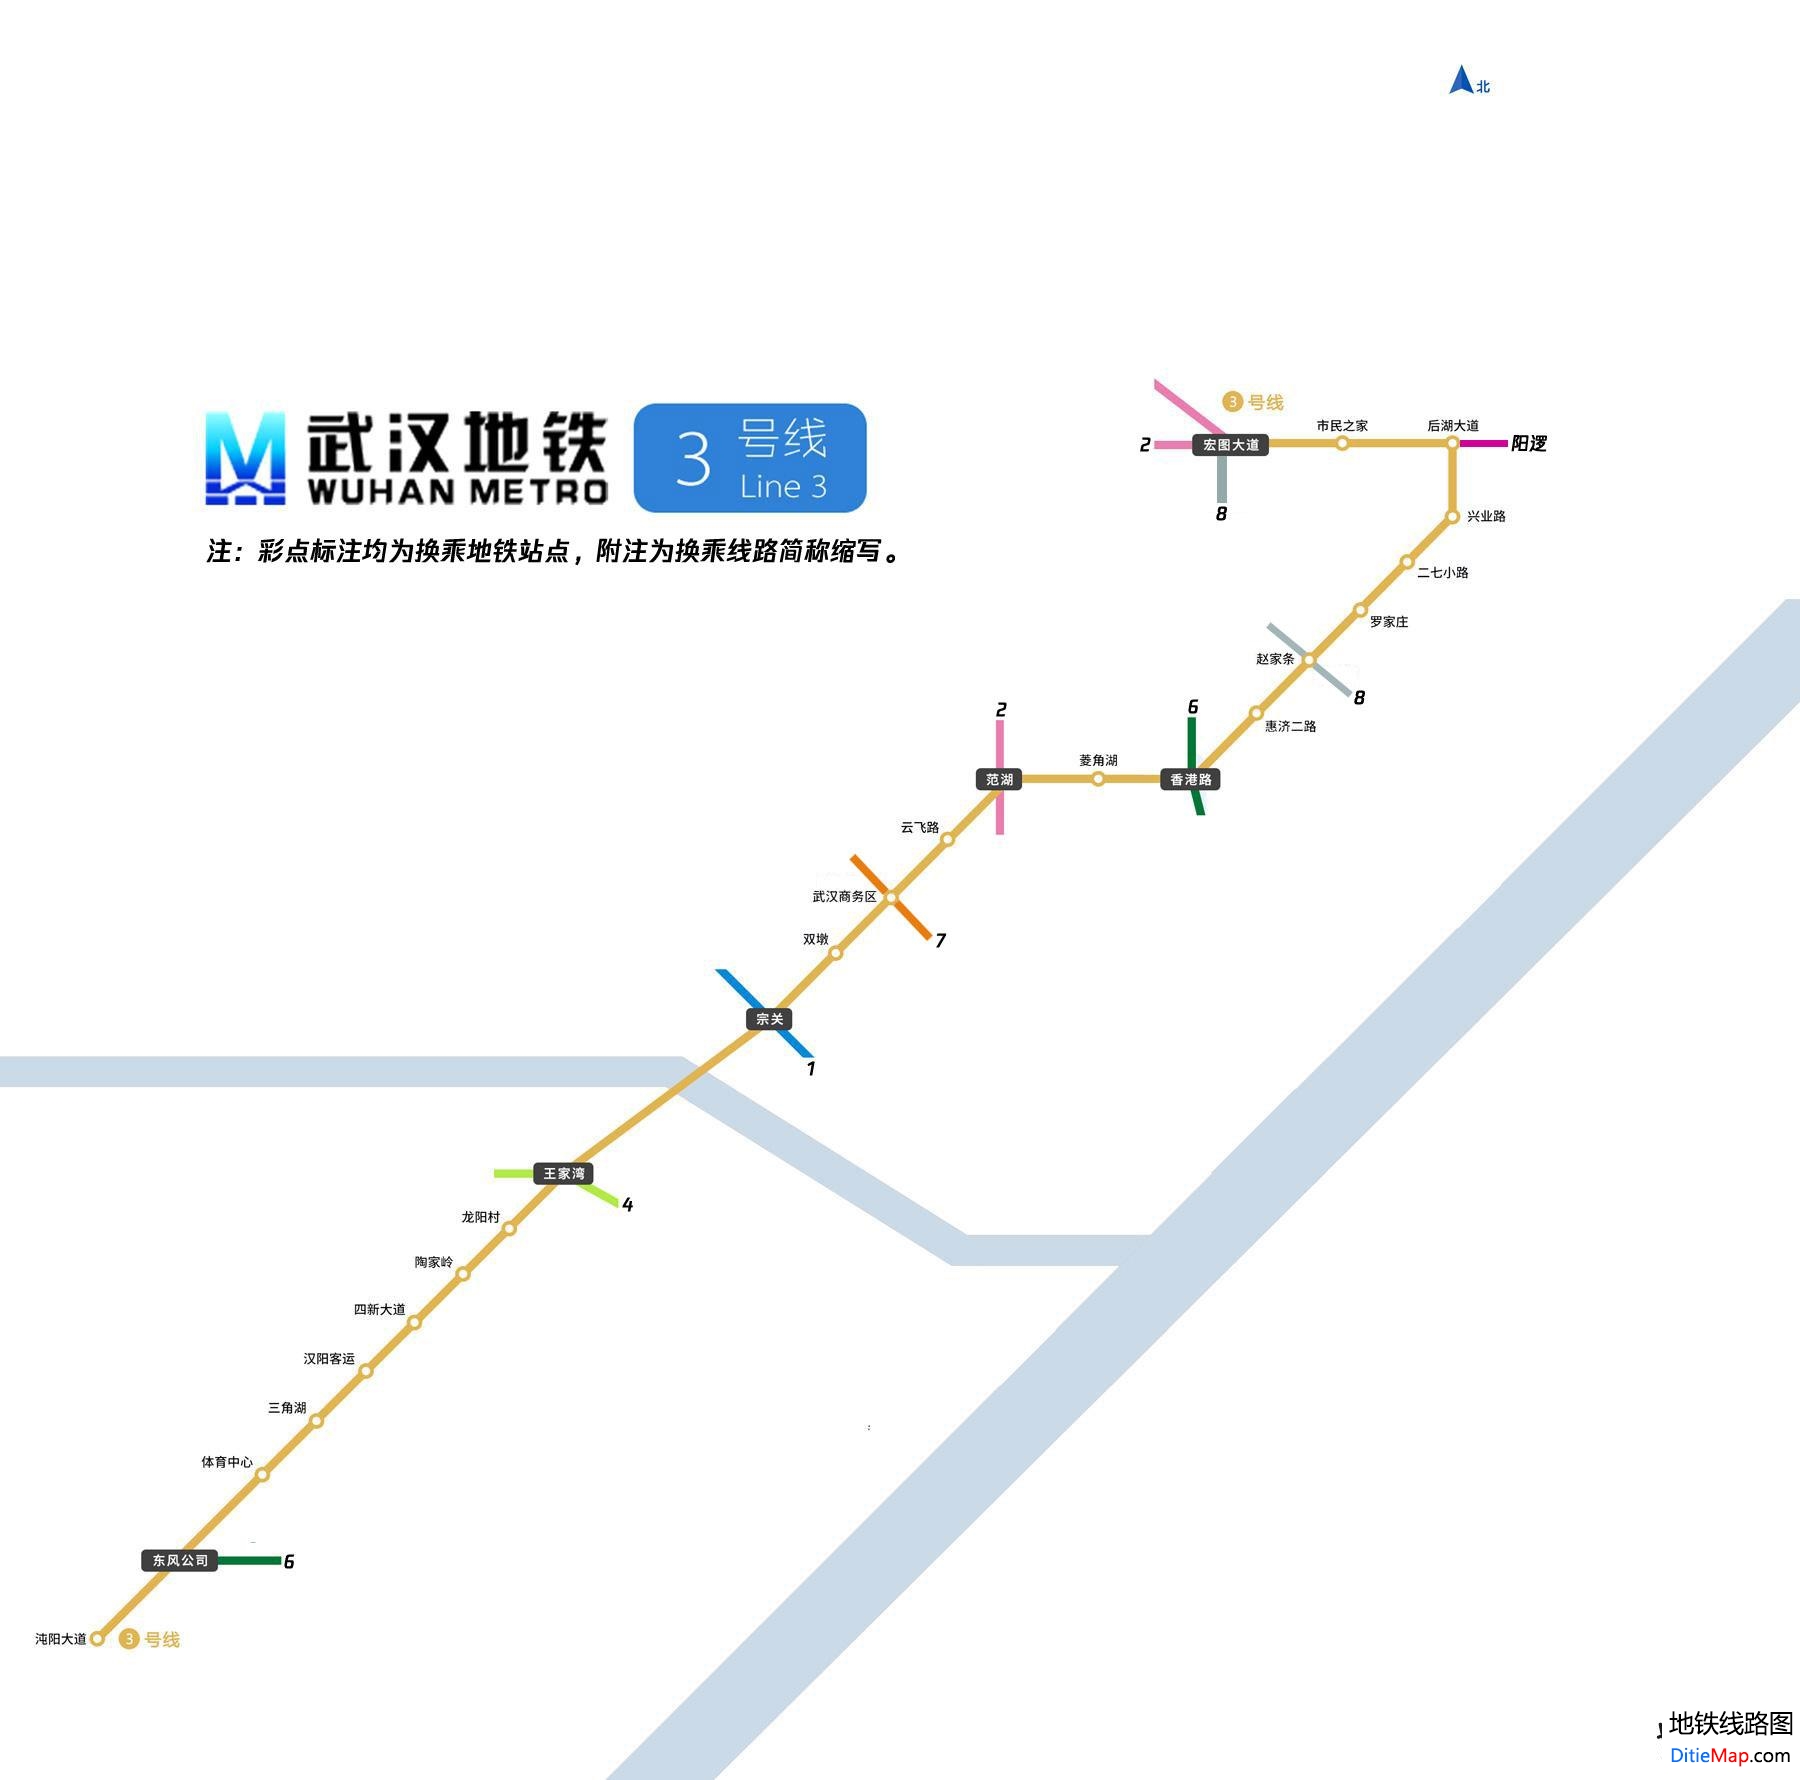 武汉地铁3号线线路图 武汉地铁3号线 武汉地铁三号线 武汉地铁线路图